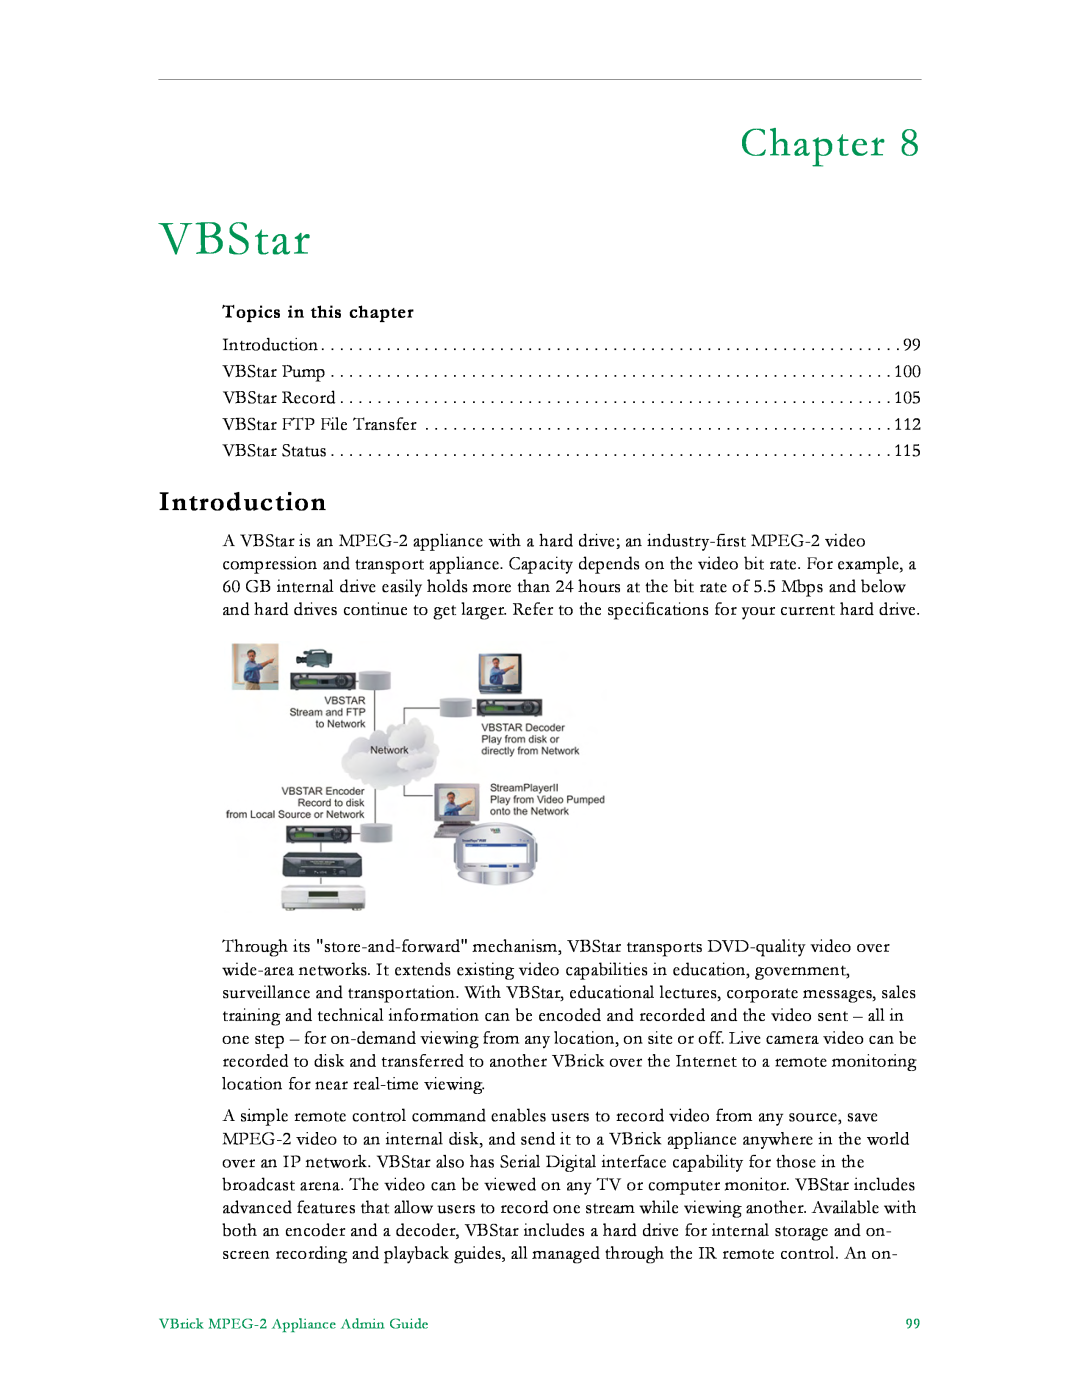 VBrick Systems VB5000, VB6000, VB4000 manual VBStar, Chapter, Introduction, Topics in this chapter 